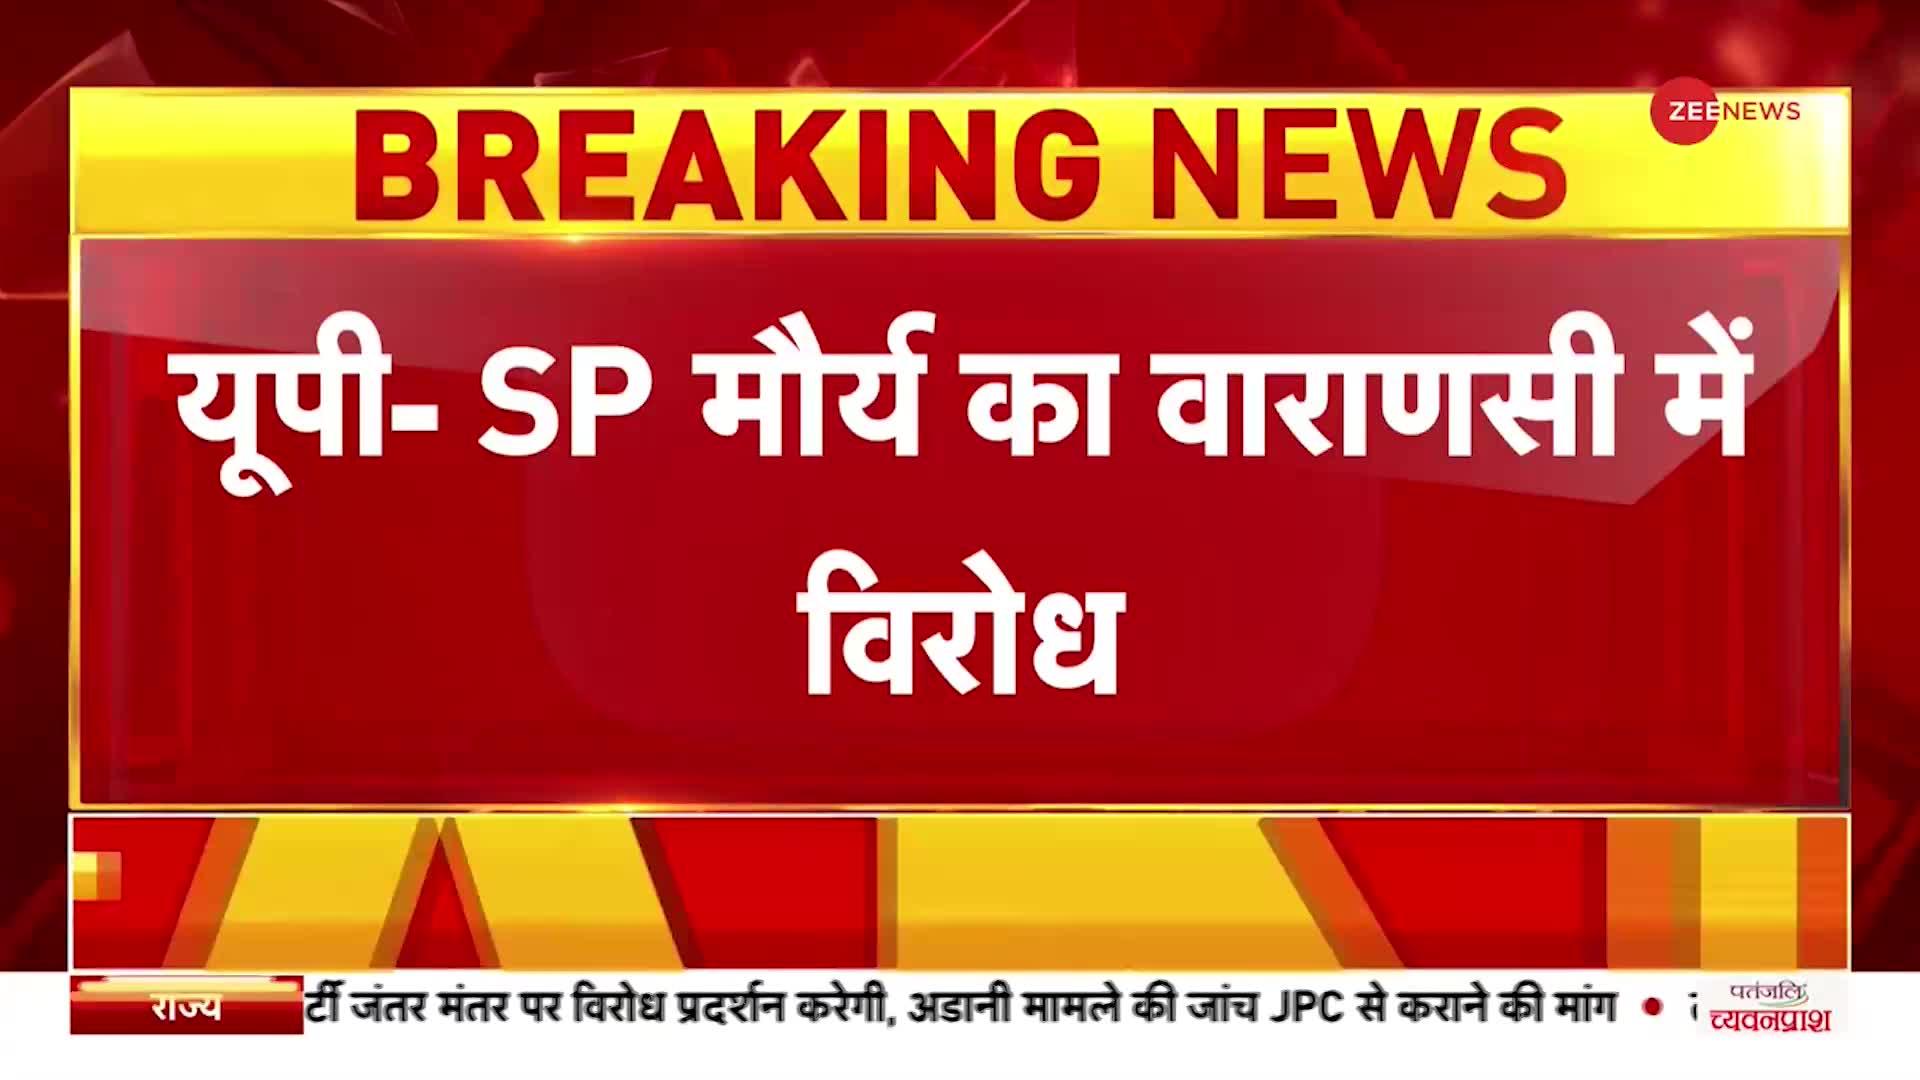 Breaking News: वाराणसी में सपा नेता SP मौर्य का विरोध, गाड़ी पर फेंकी गई स्याही